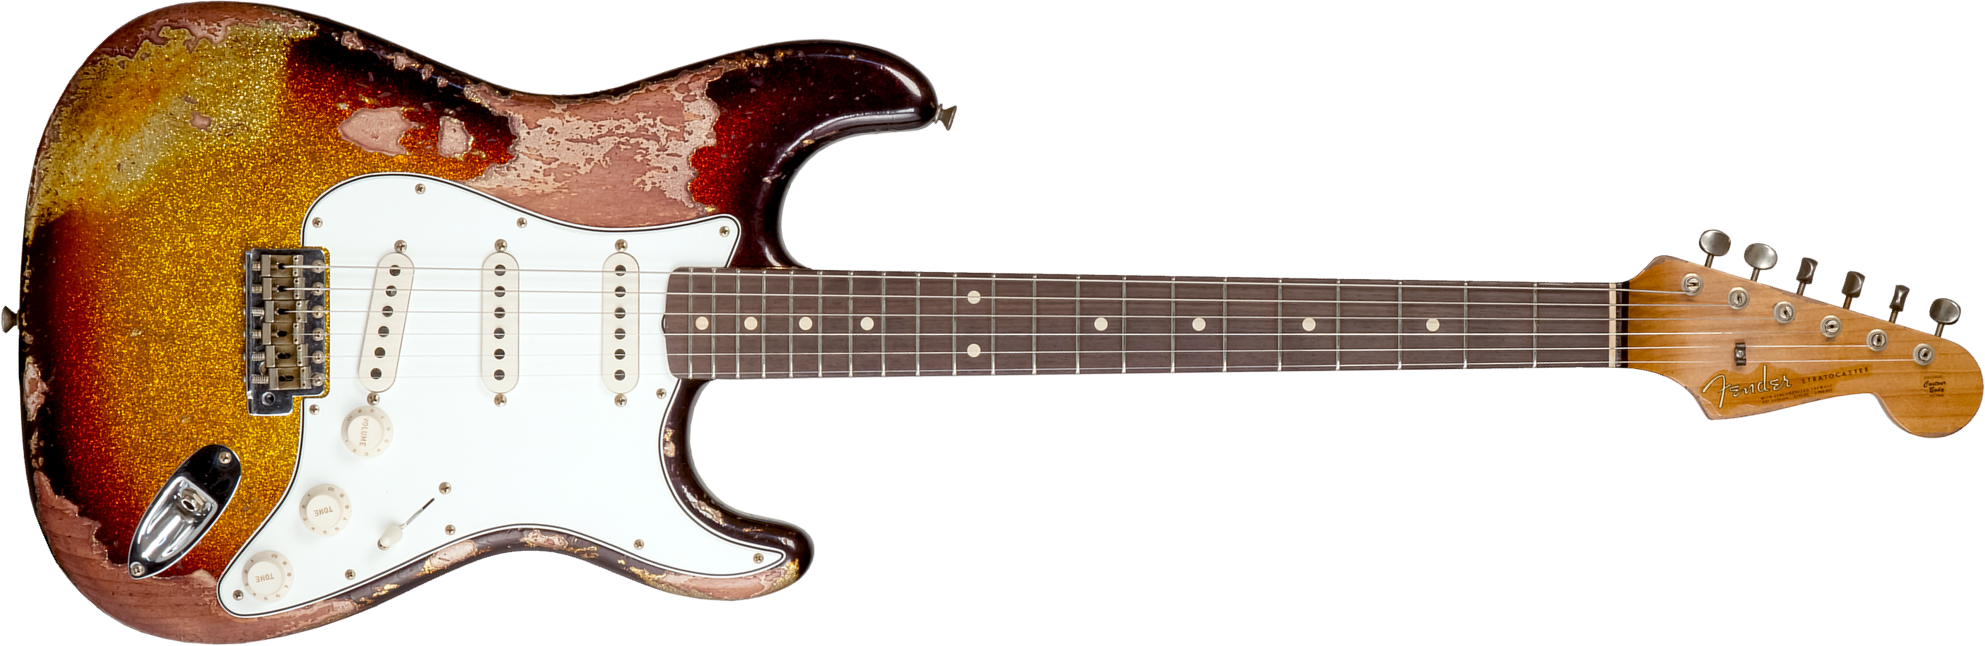 Fender Custom Shop Strat 1963 3s Trem Rw #r136169 - Super Heavy Relic Sparkle 3-color Sunburst - Guitare Électrique Forme Str - Main picture